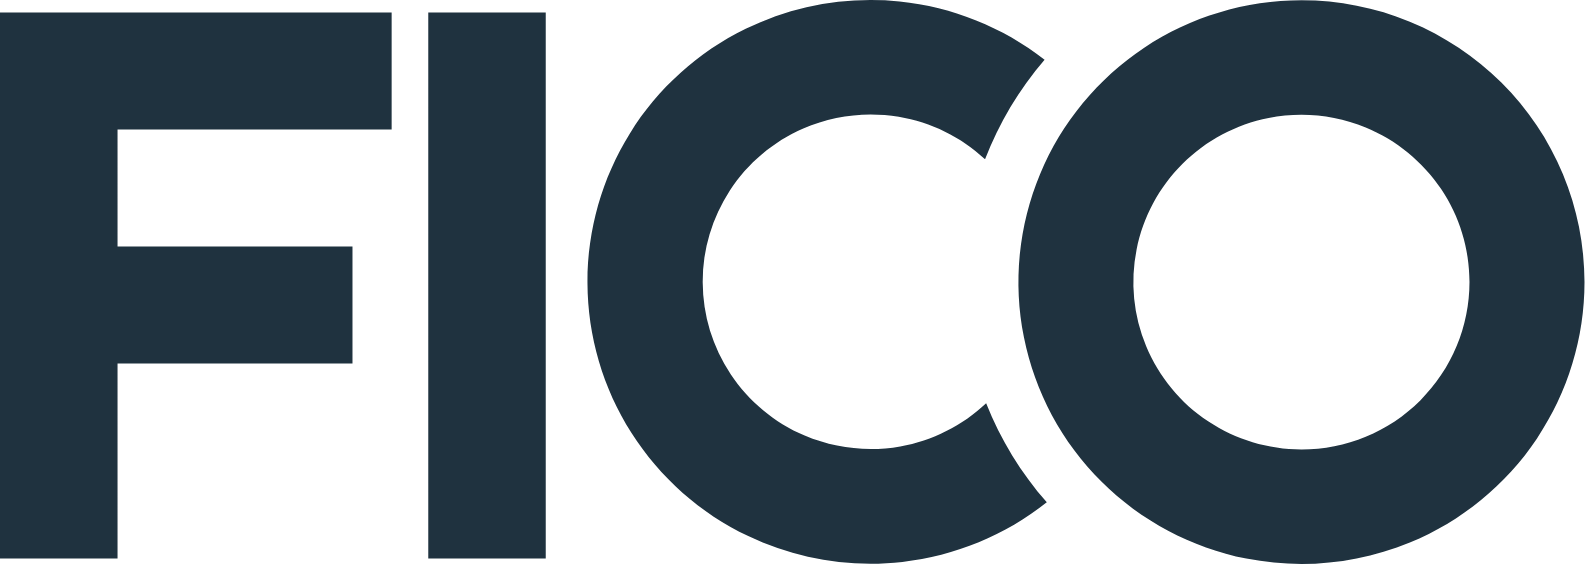 FICO logo (PNG transparent)